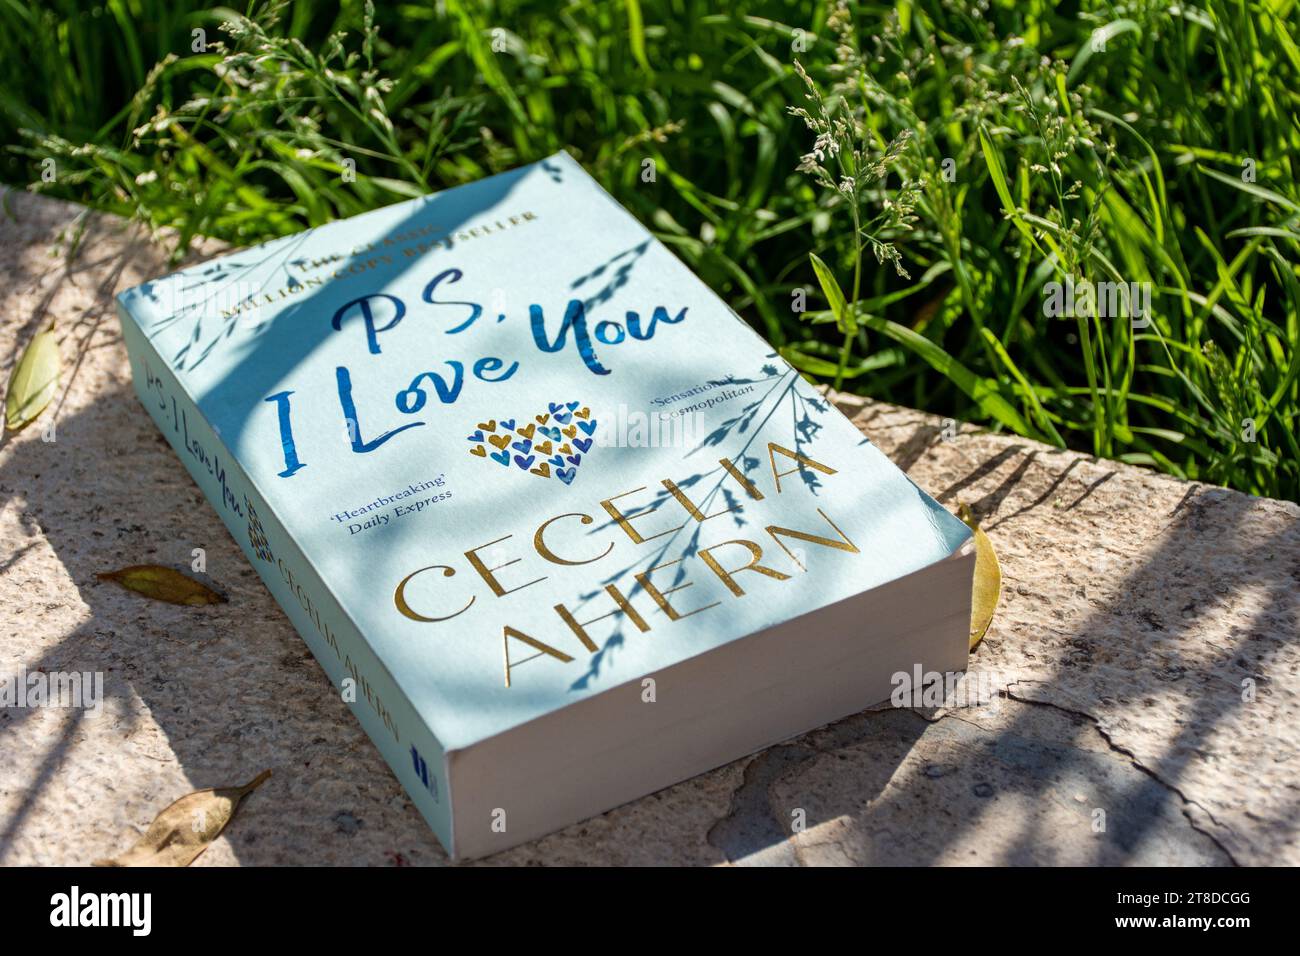 Primo piano su 'PS di Cecelia Ahern. Amo il romanzo di te in giardino. Foto Stock